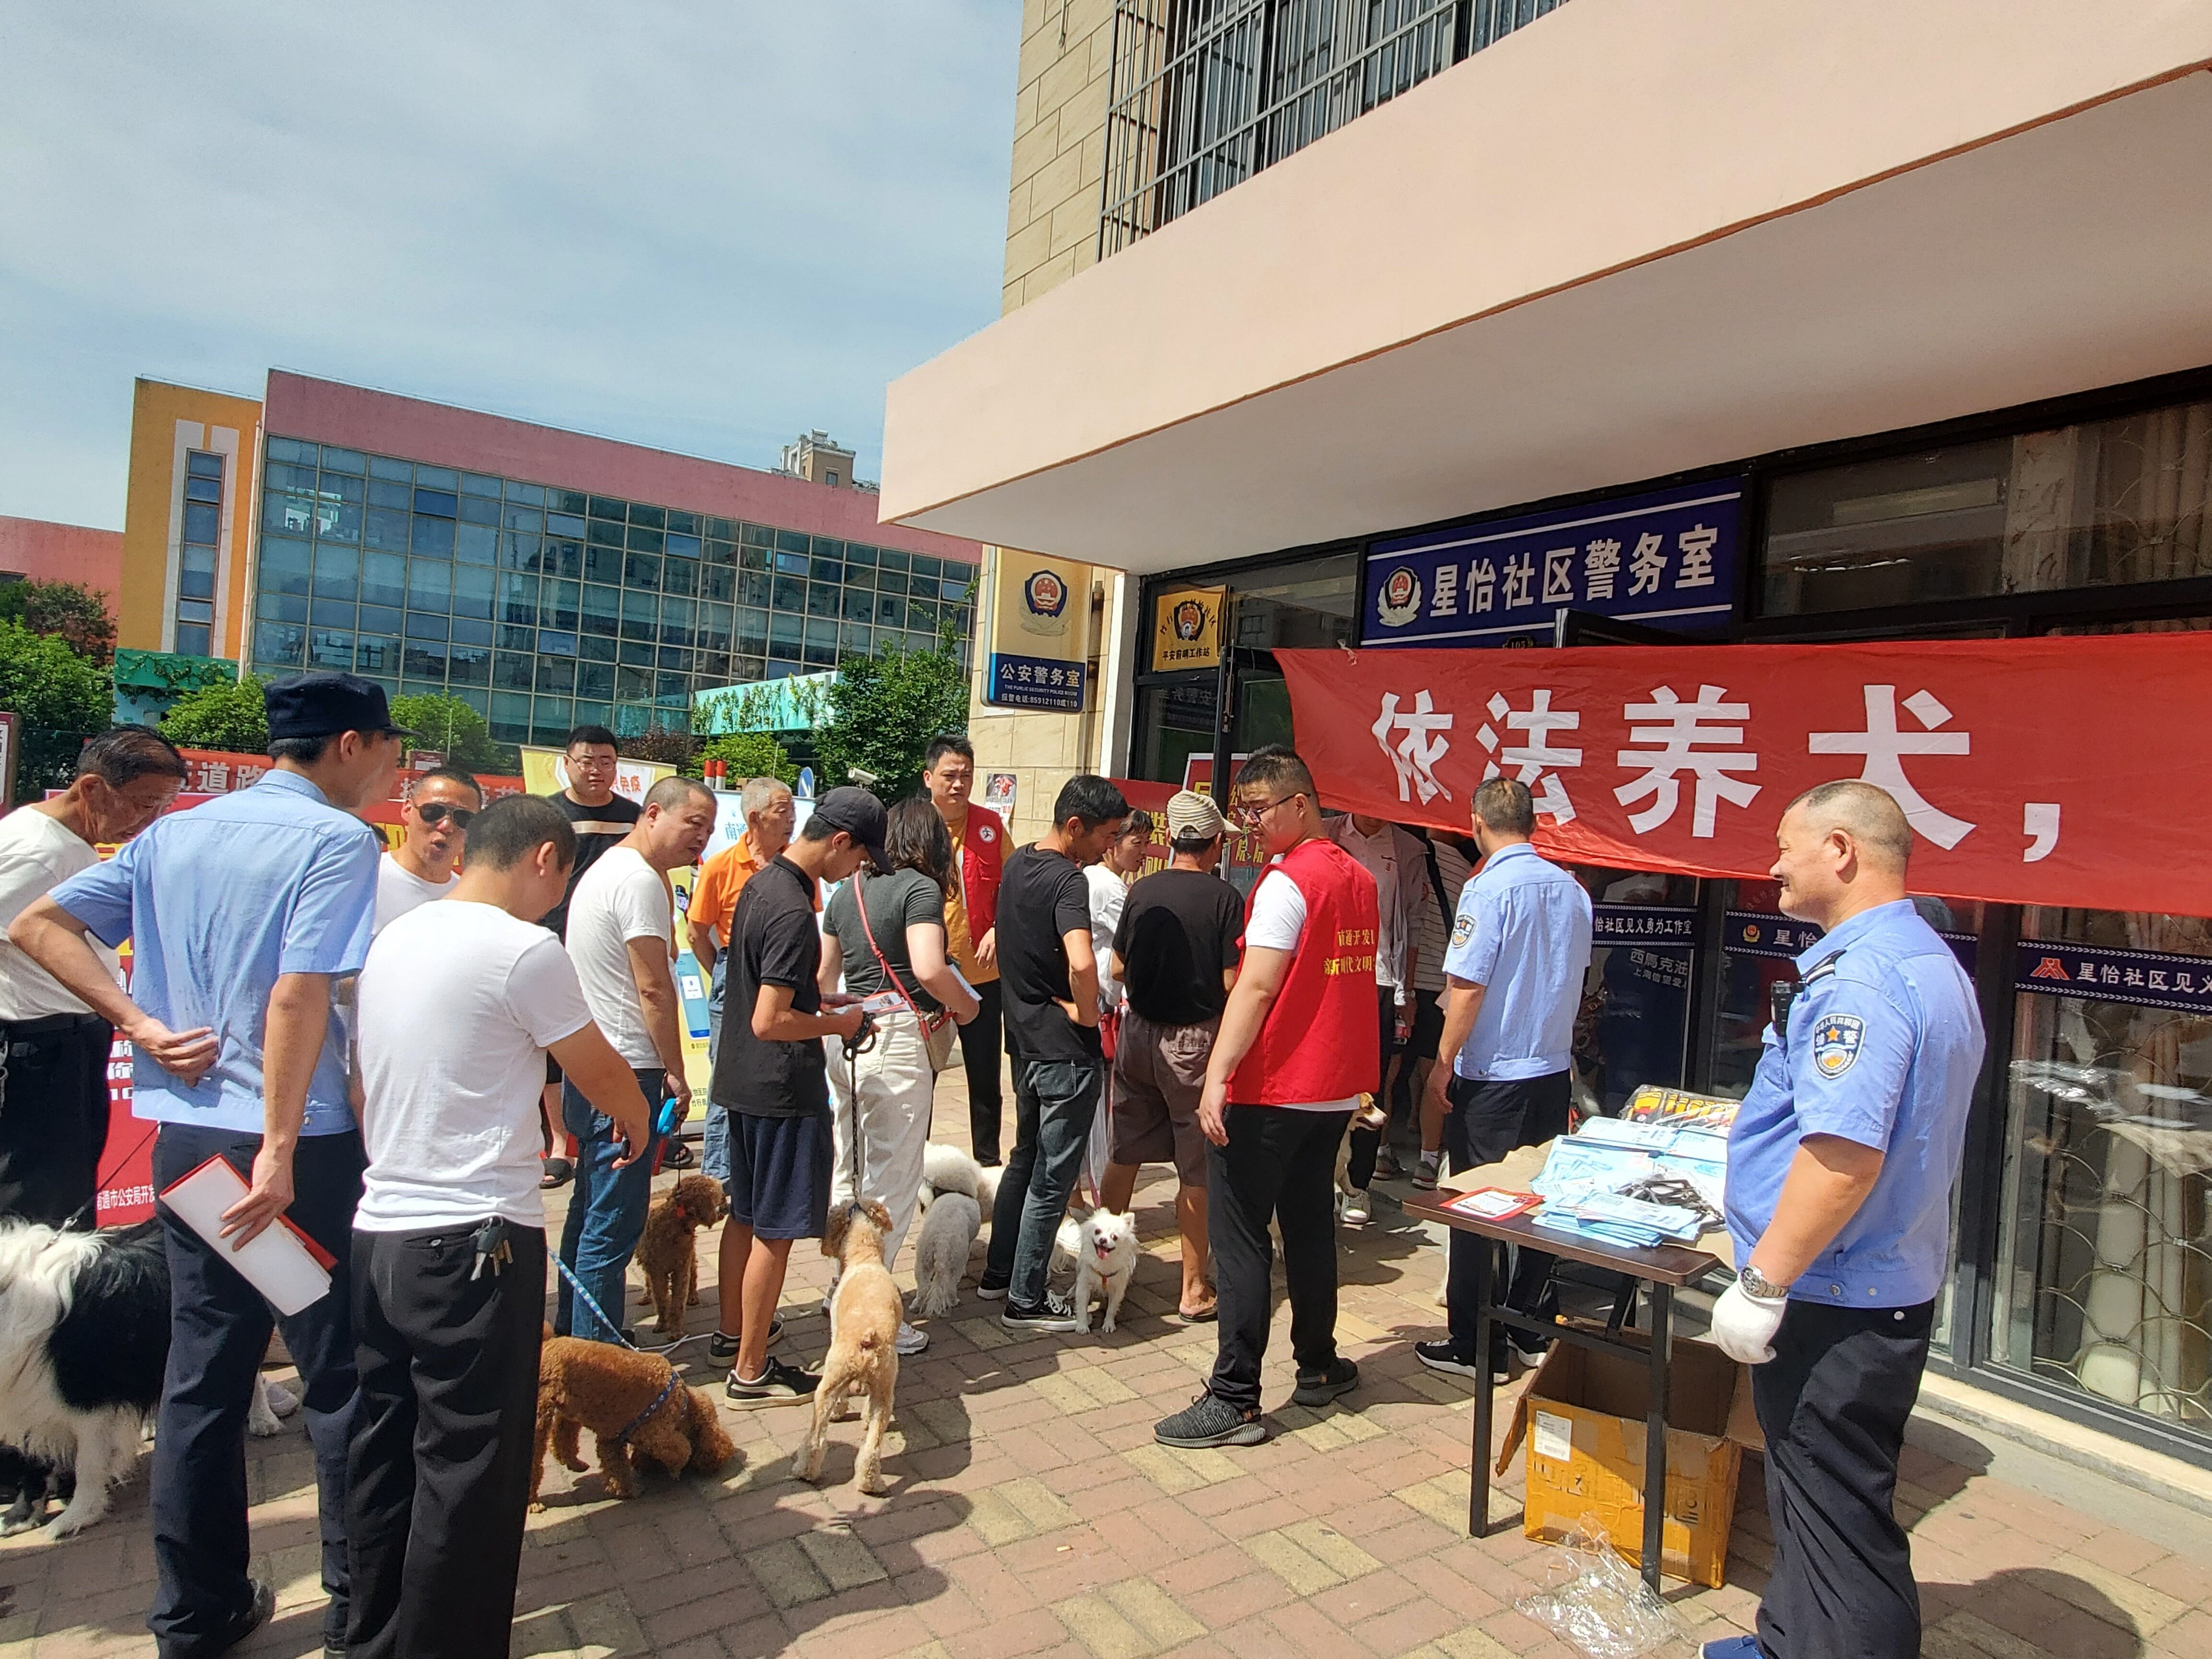 社区工作人员正联合竹行派出所民警进行文明养犬集中宣传,引导居民